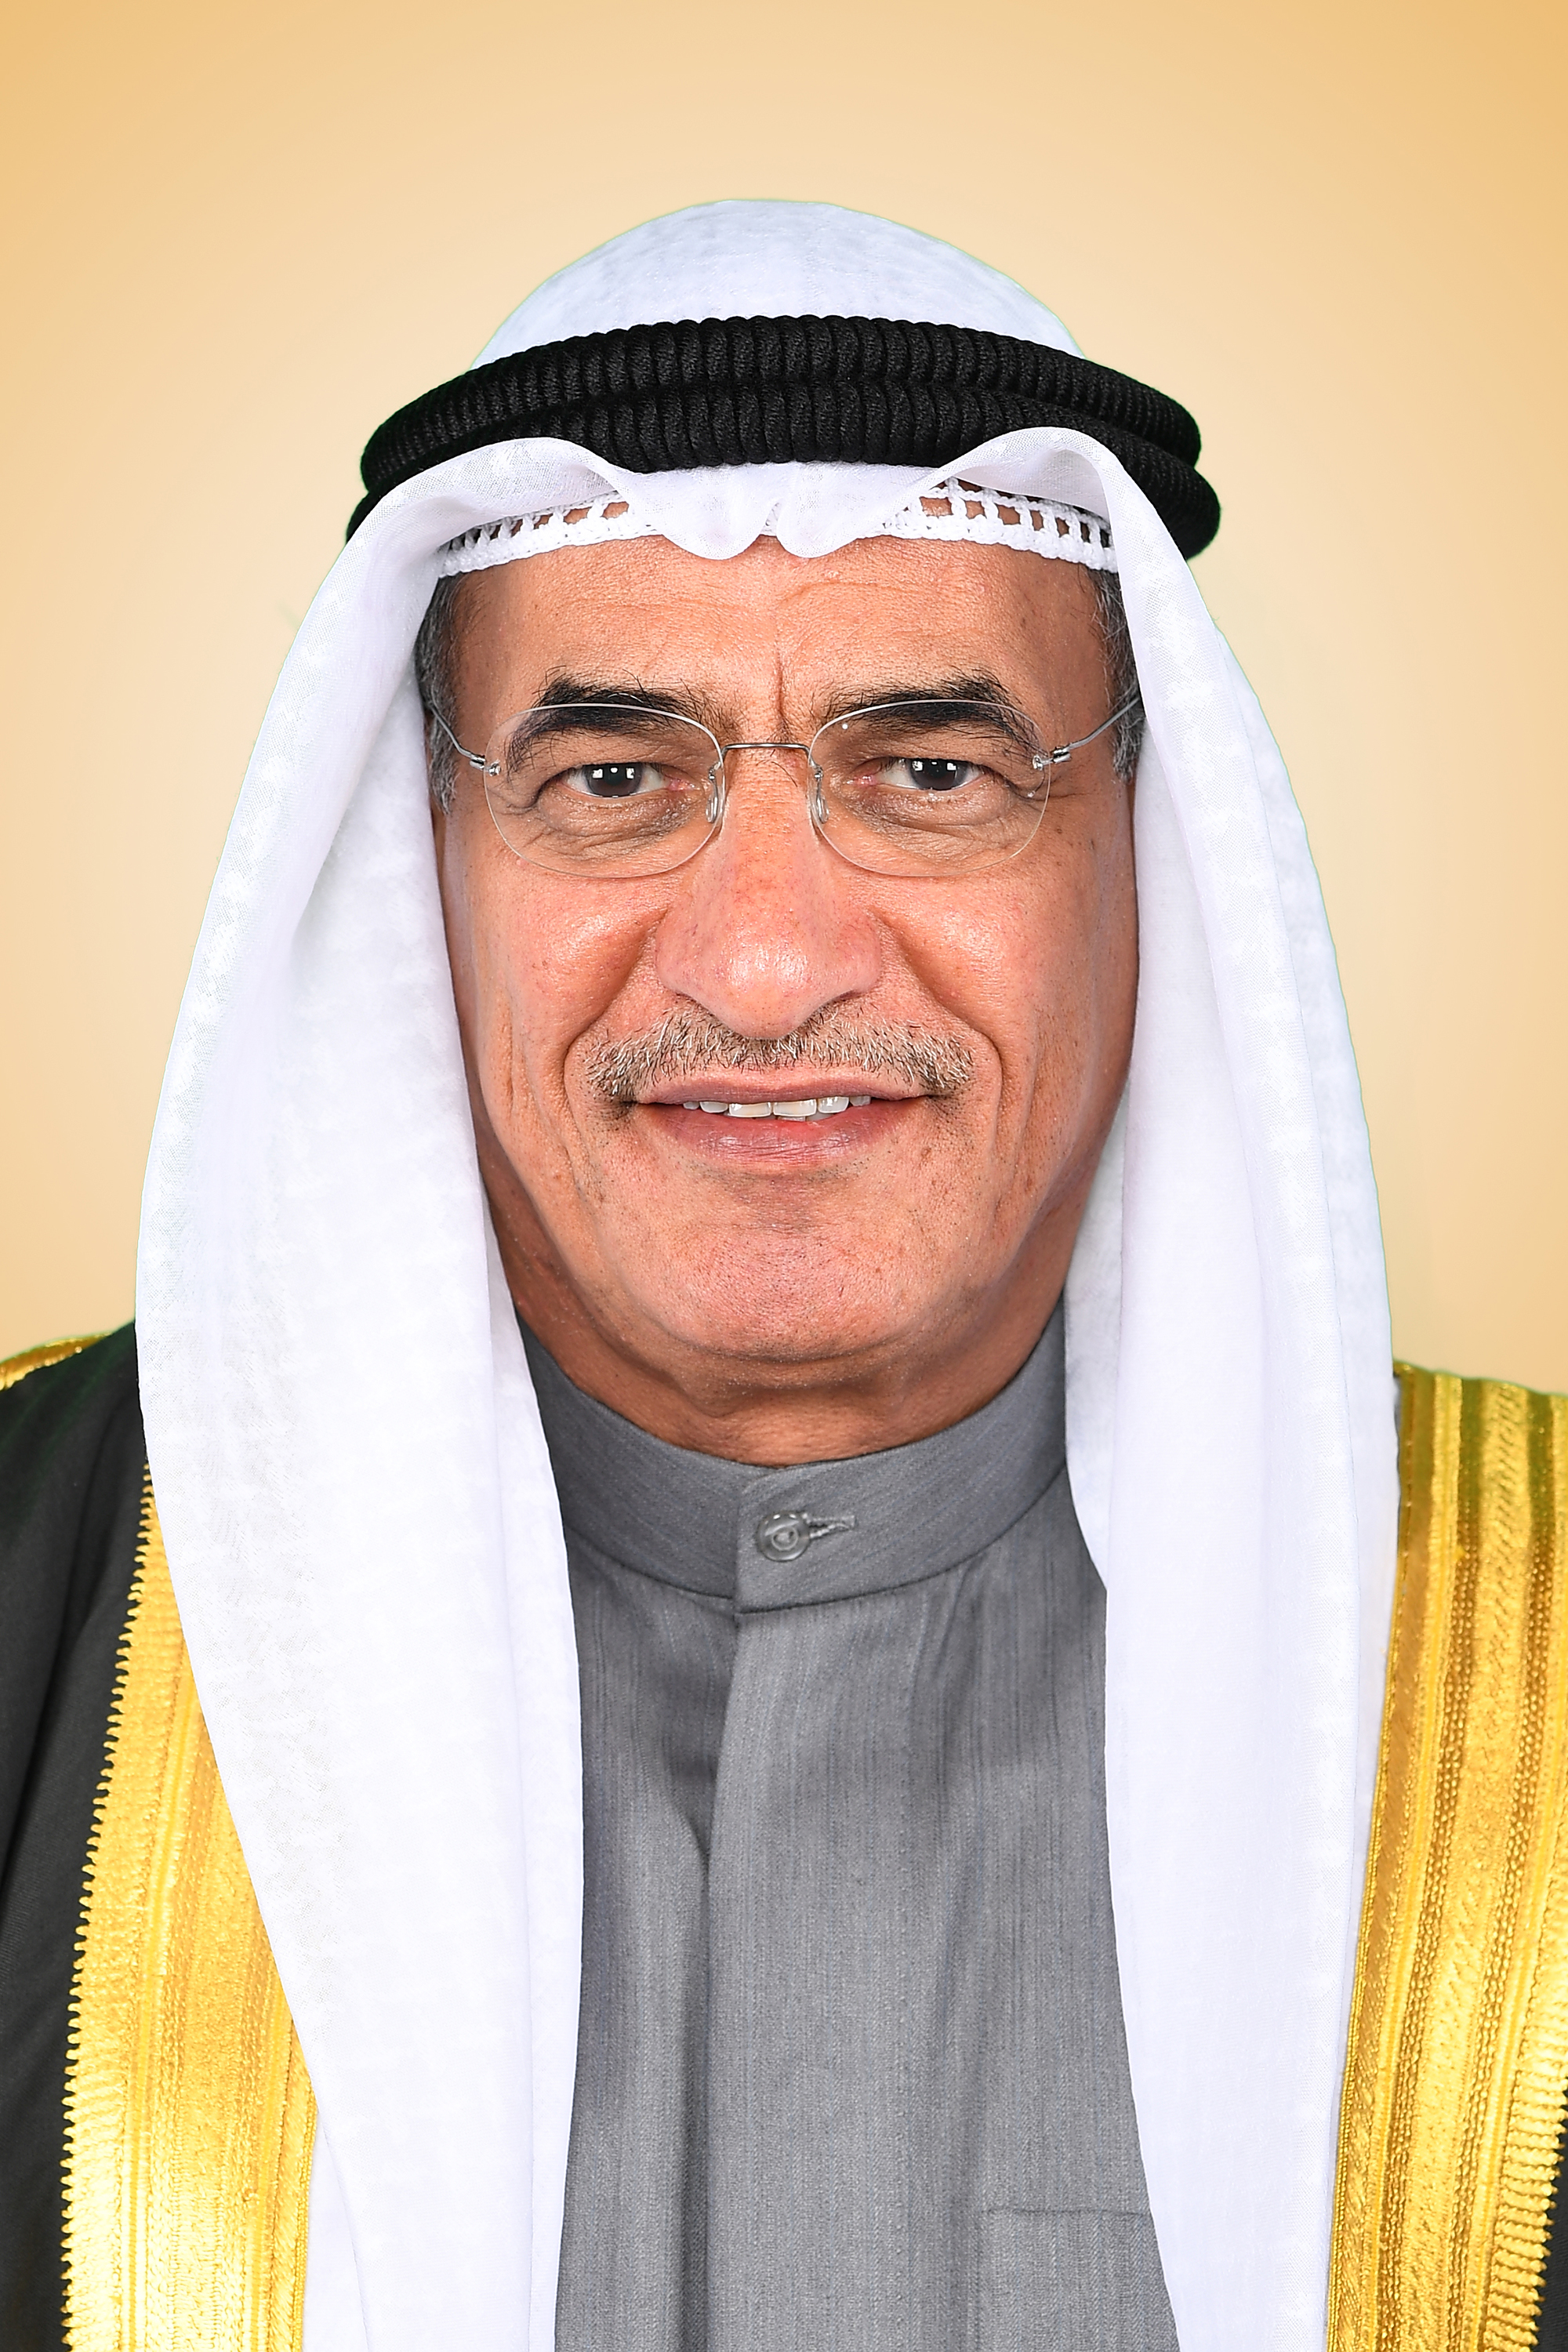 وزير النفط وزير الكهرباء والماء الكويتي المهندس بخيت الرشيدي